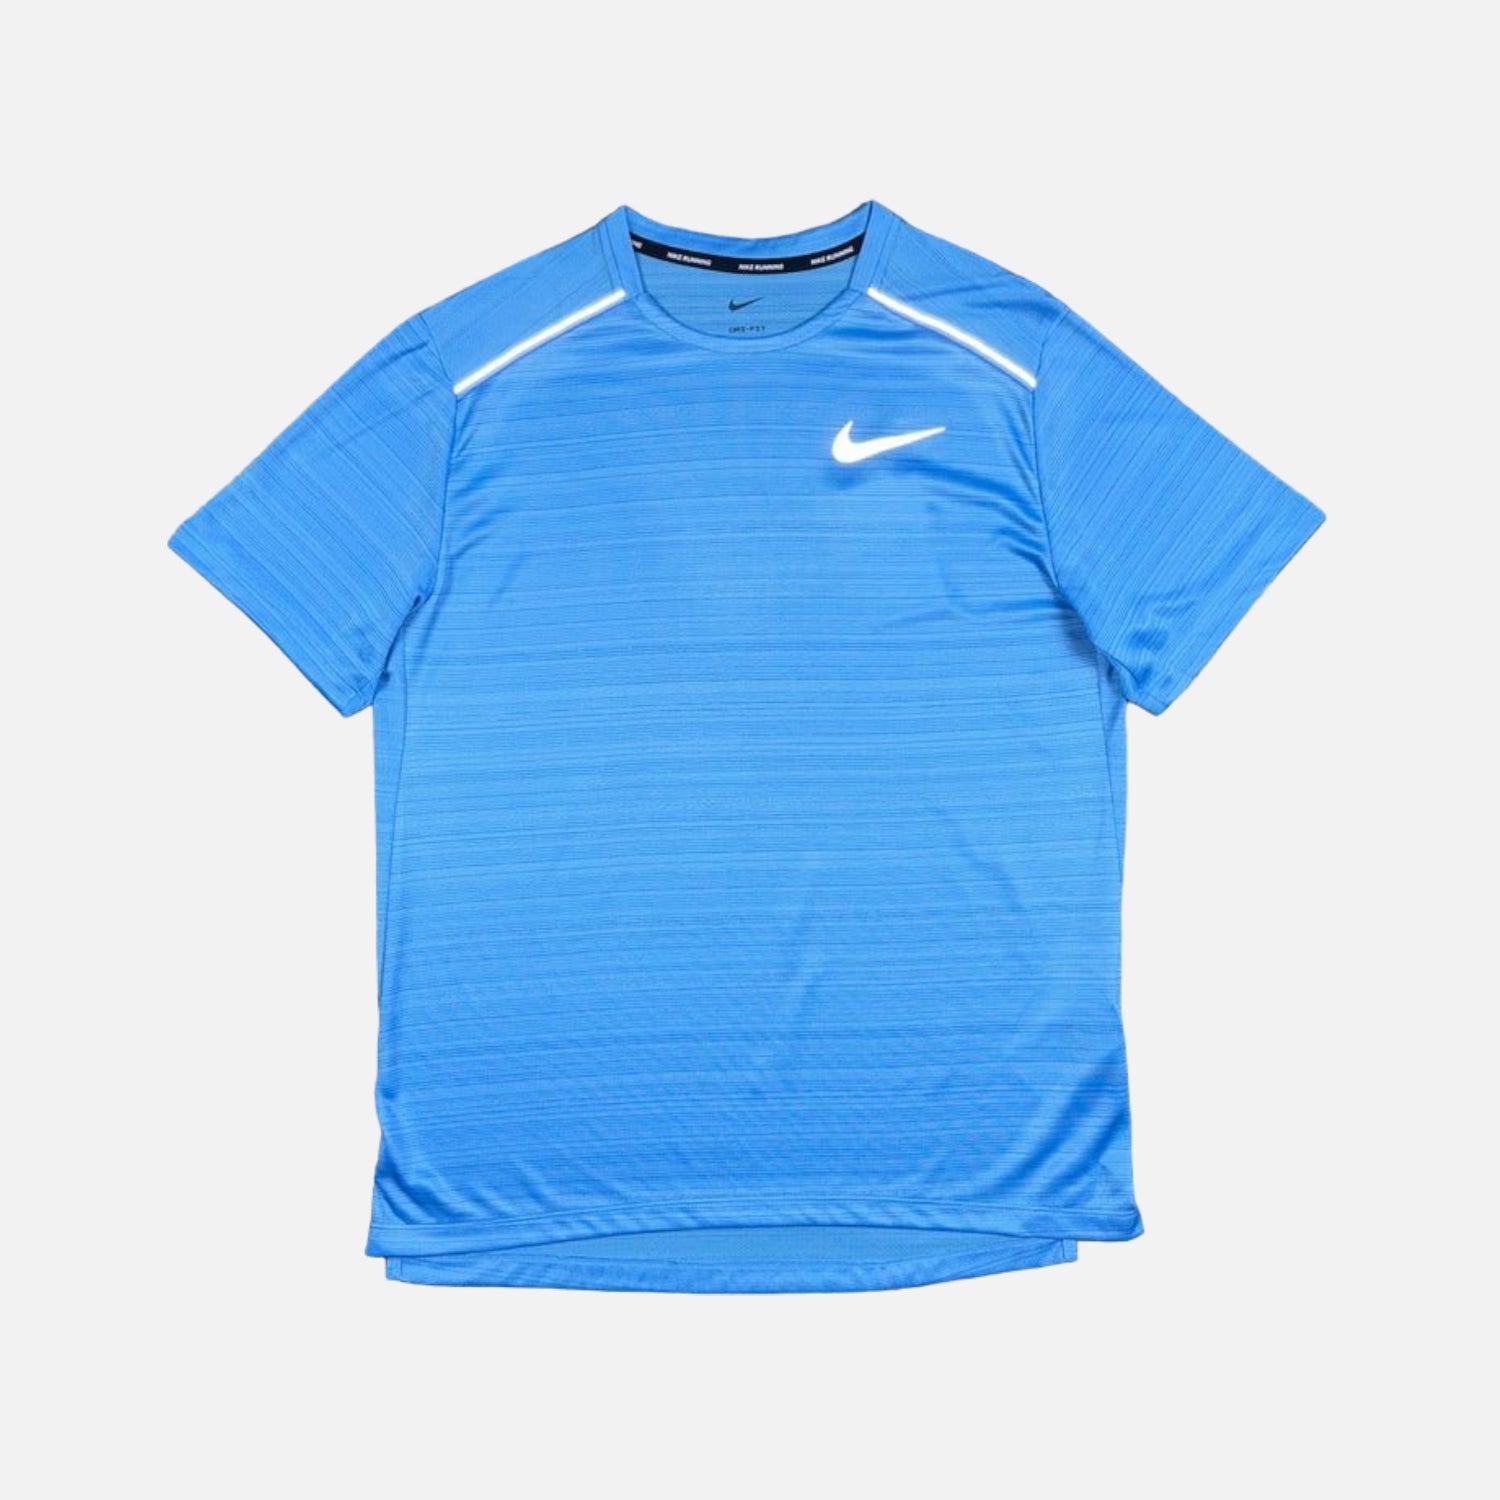 Nike Dri-Fit Miler 1.0 T-Shirt - University Blue